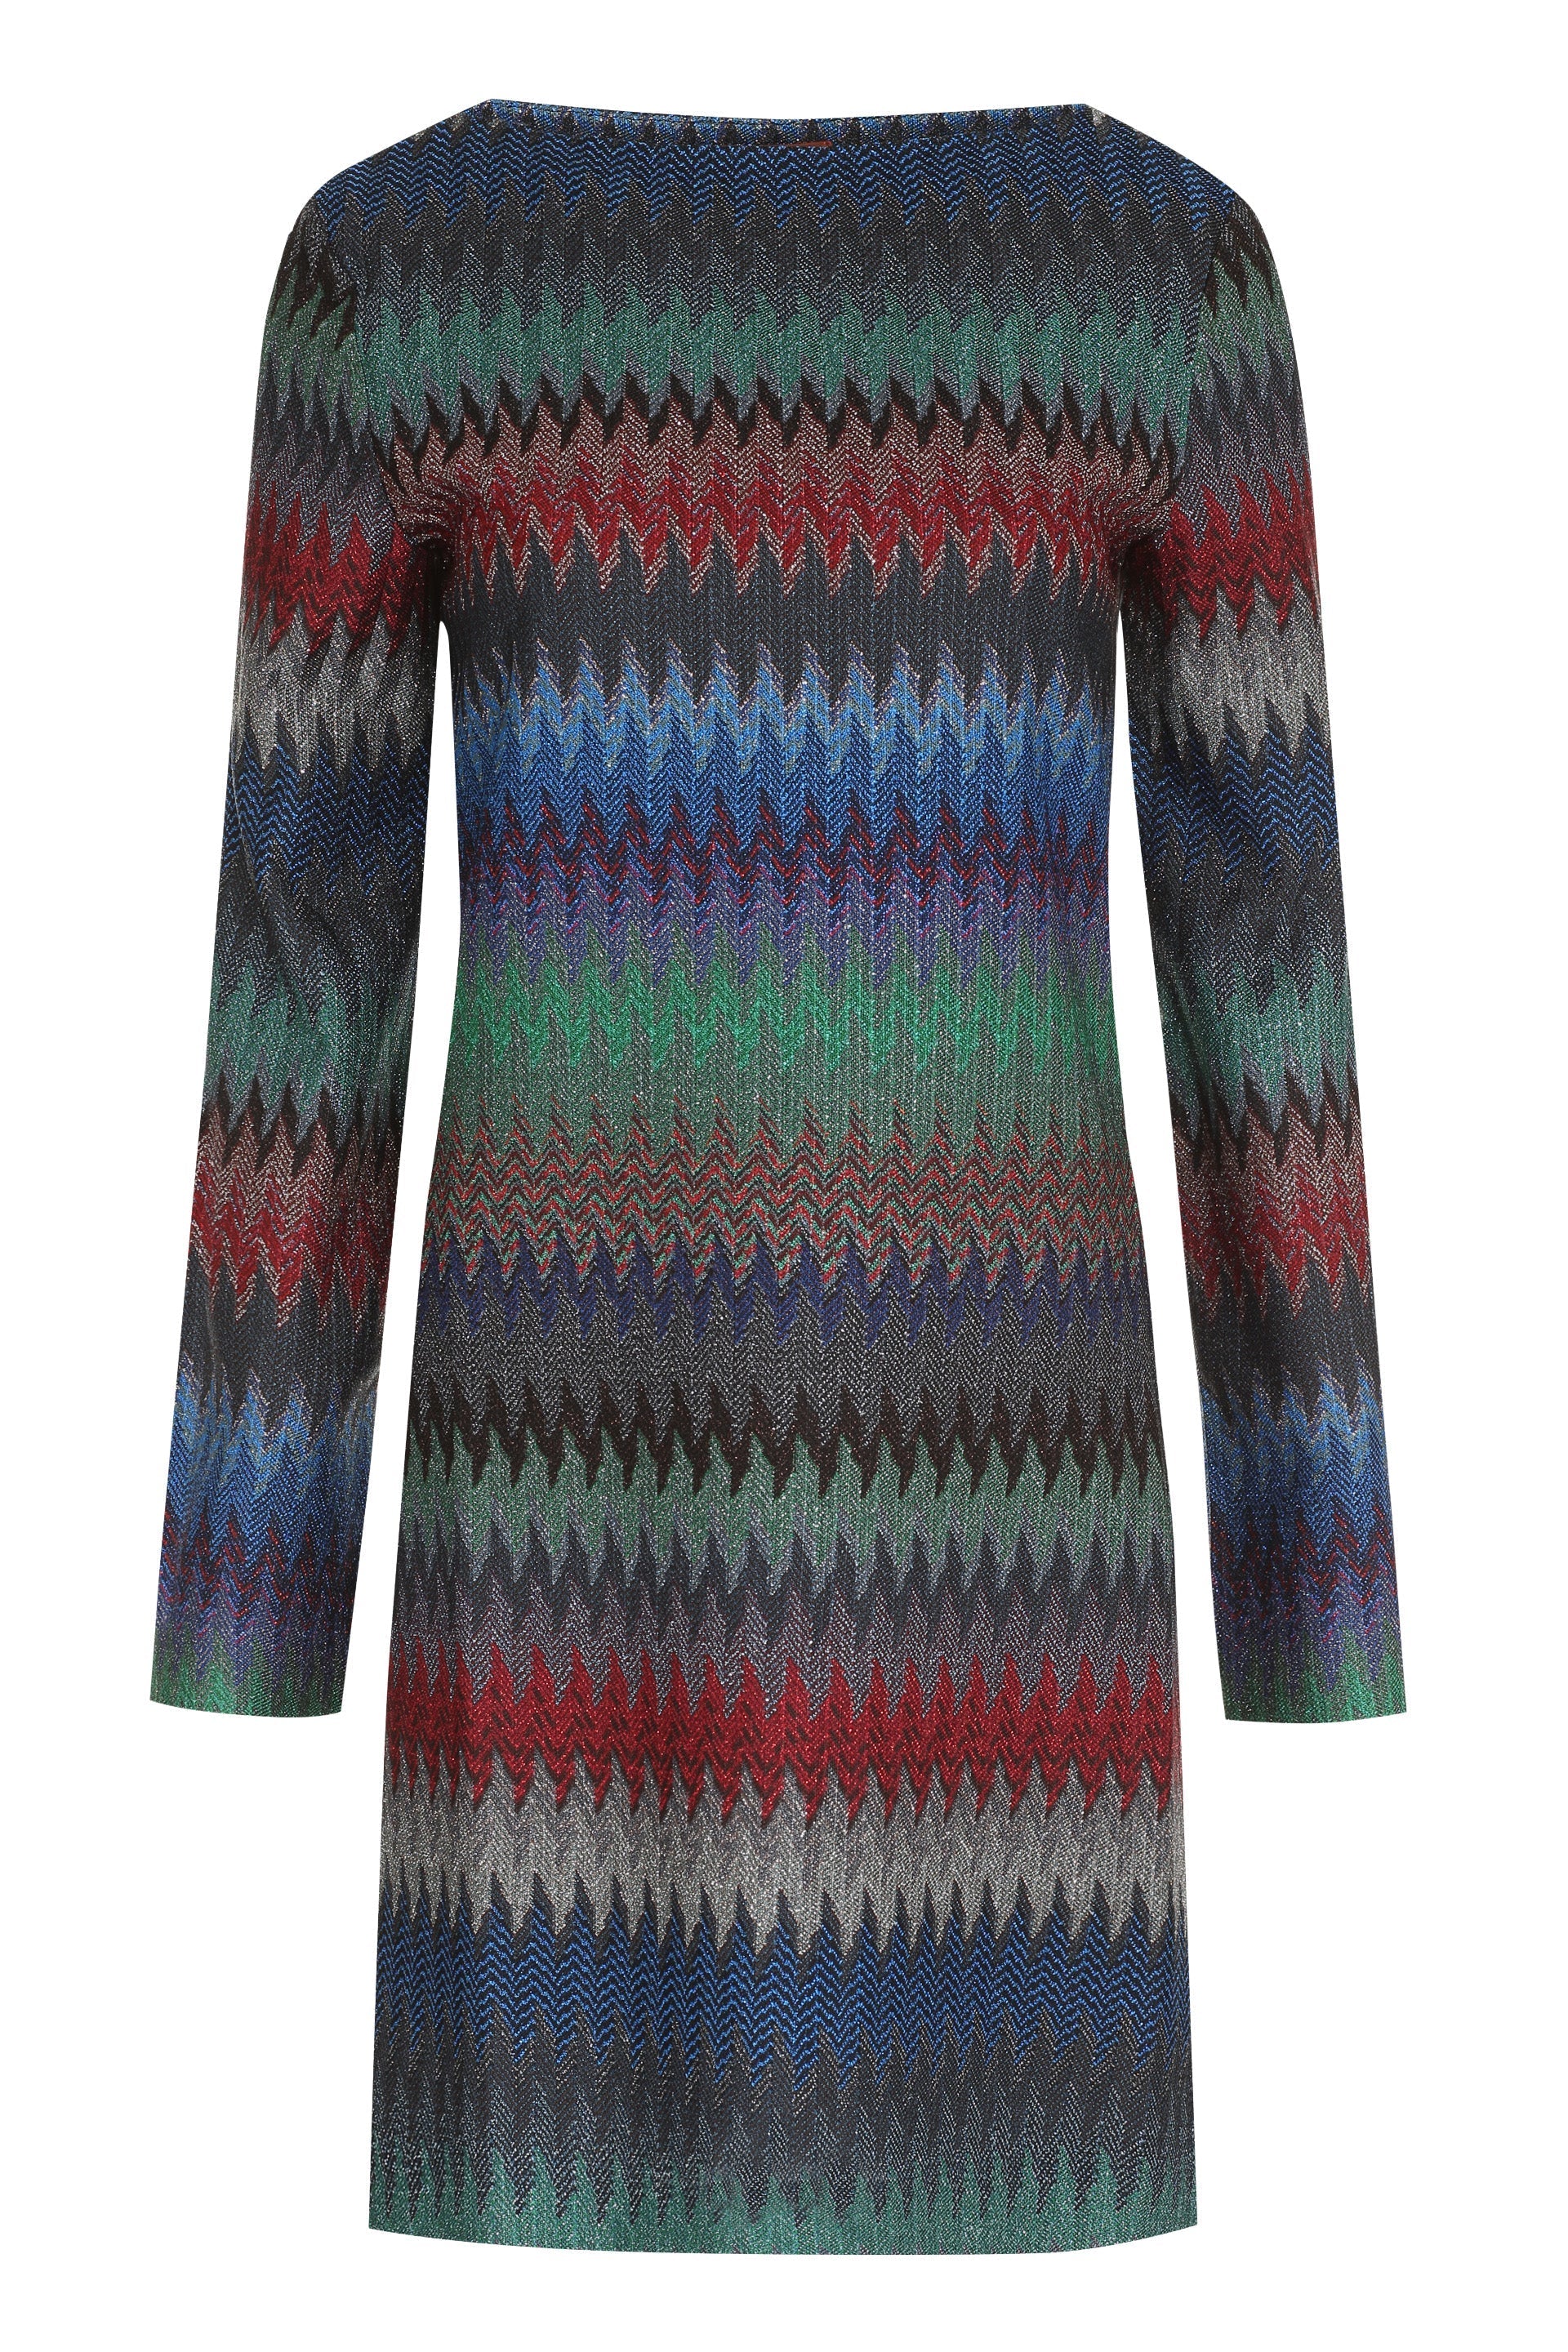 Chevron lurex knit dress-Missoni-OUTLET-SALE-40-ARCHIVIST